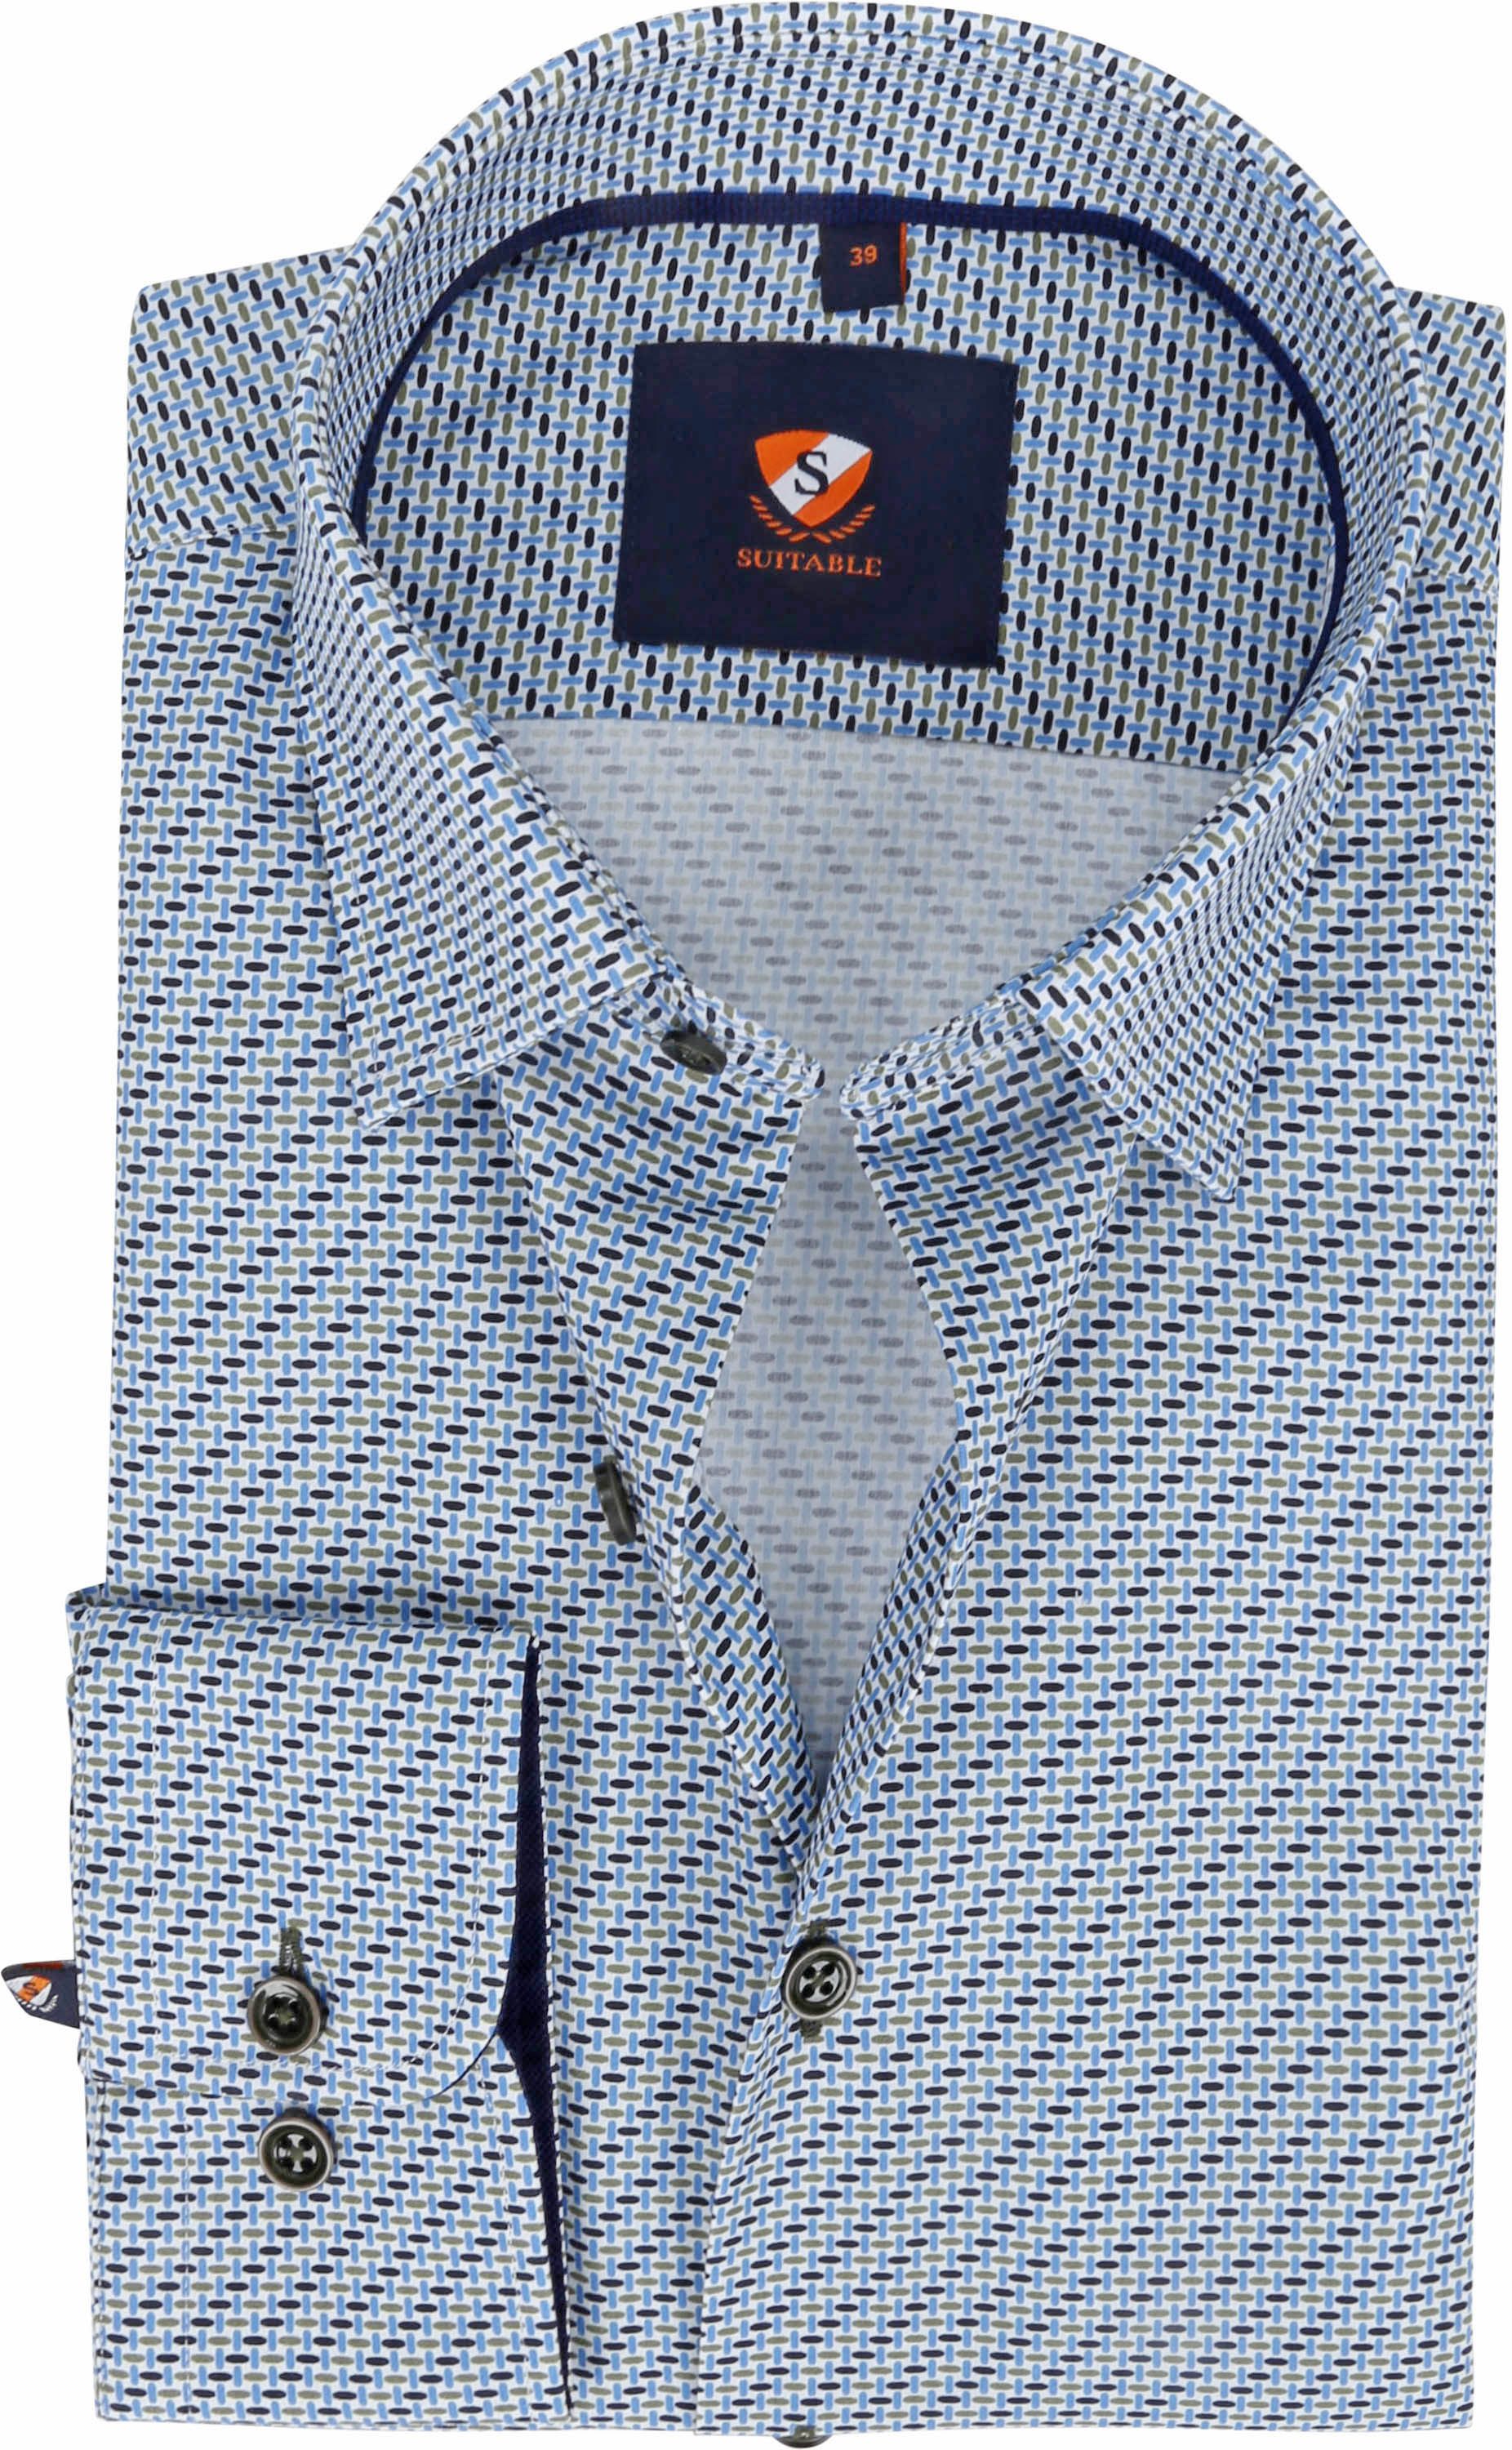 Suitable Shirt 227-3 Drip Drop Blue Green Multicolour size 15 3/4